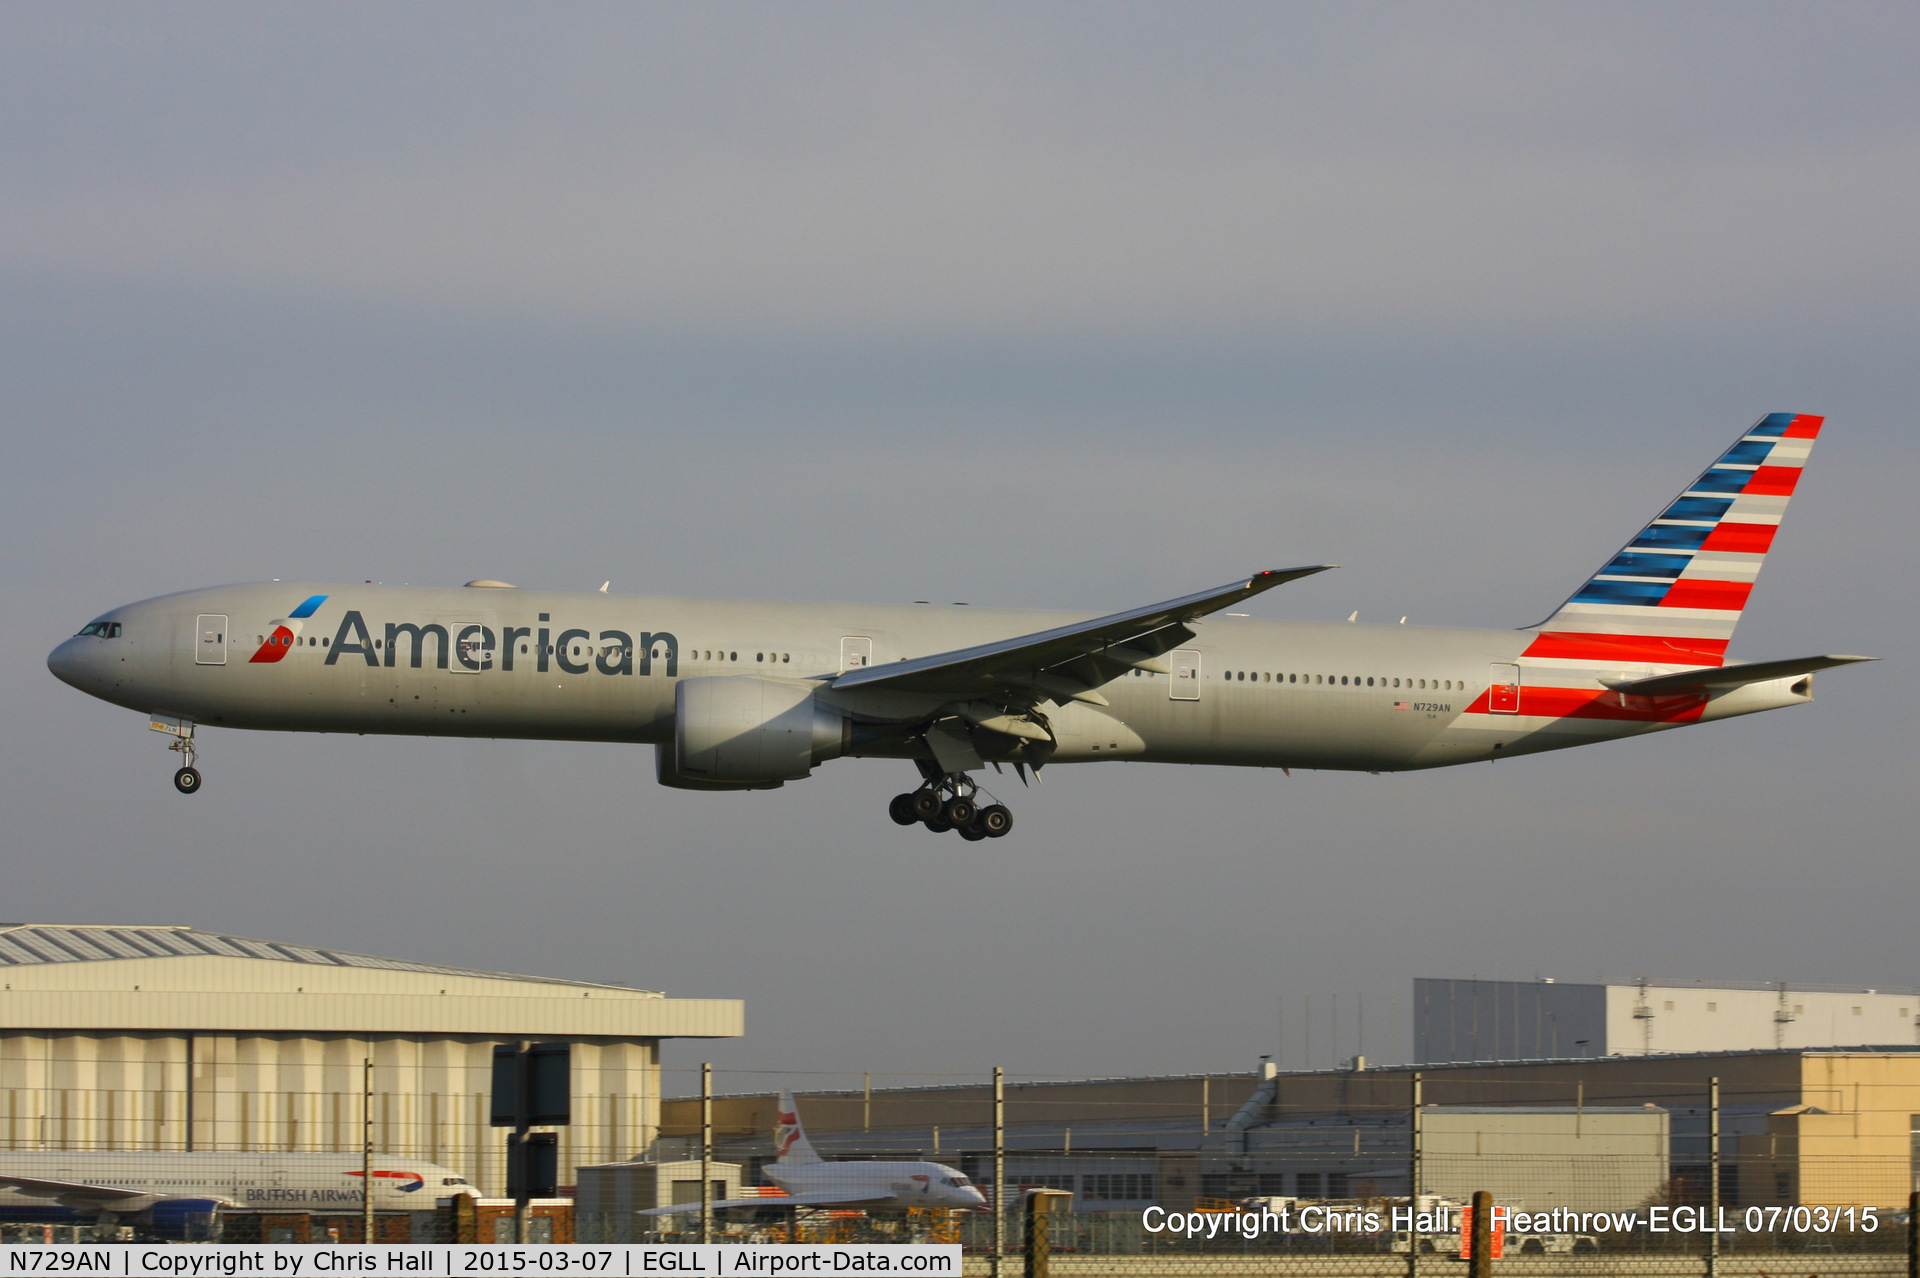 N729AN, 2014 Boeing 777-323/ER C/N 33127, American Airlines